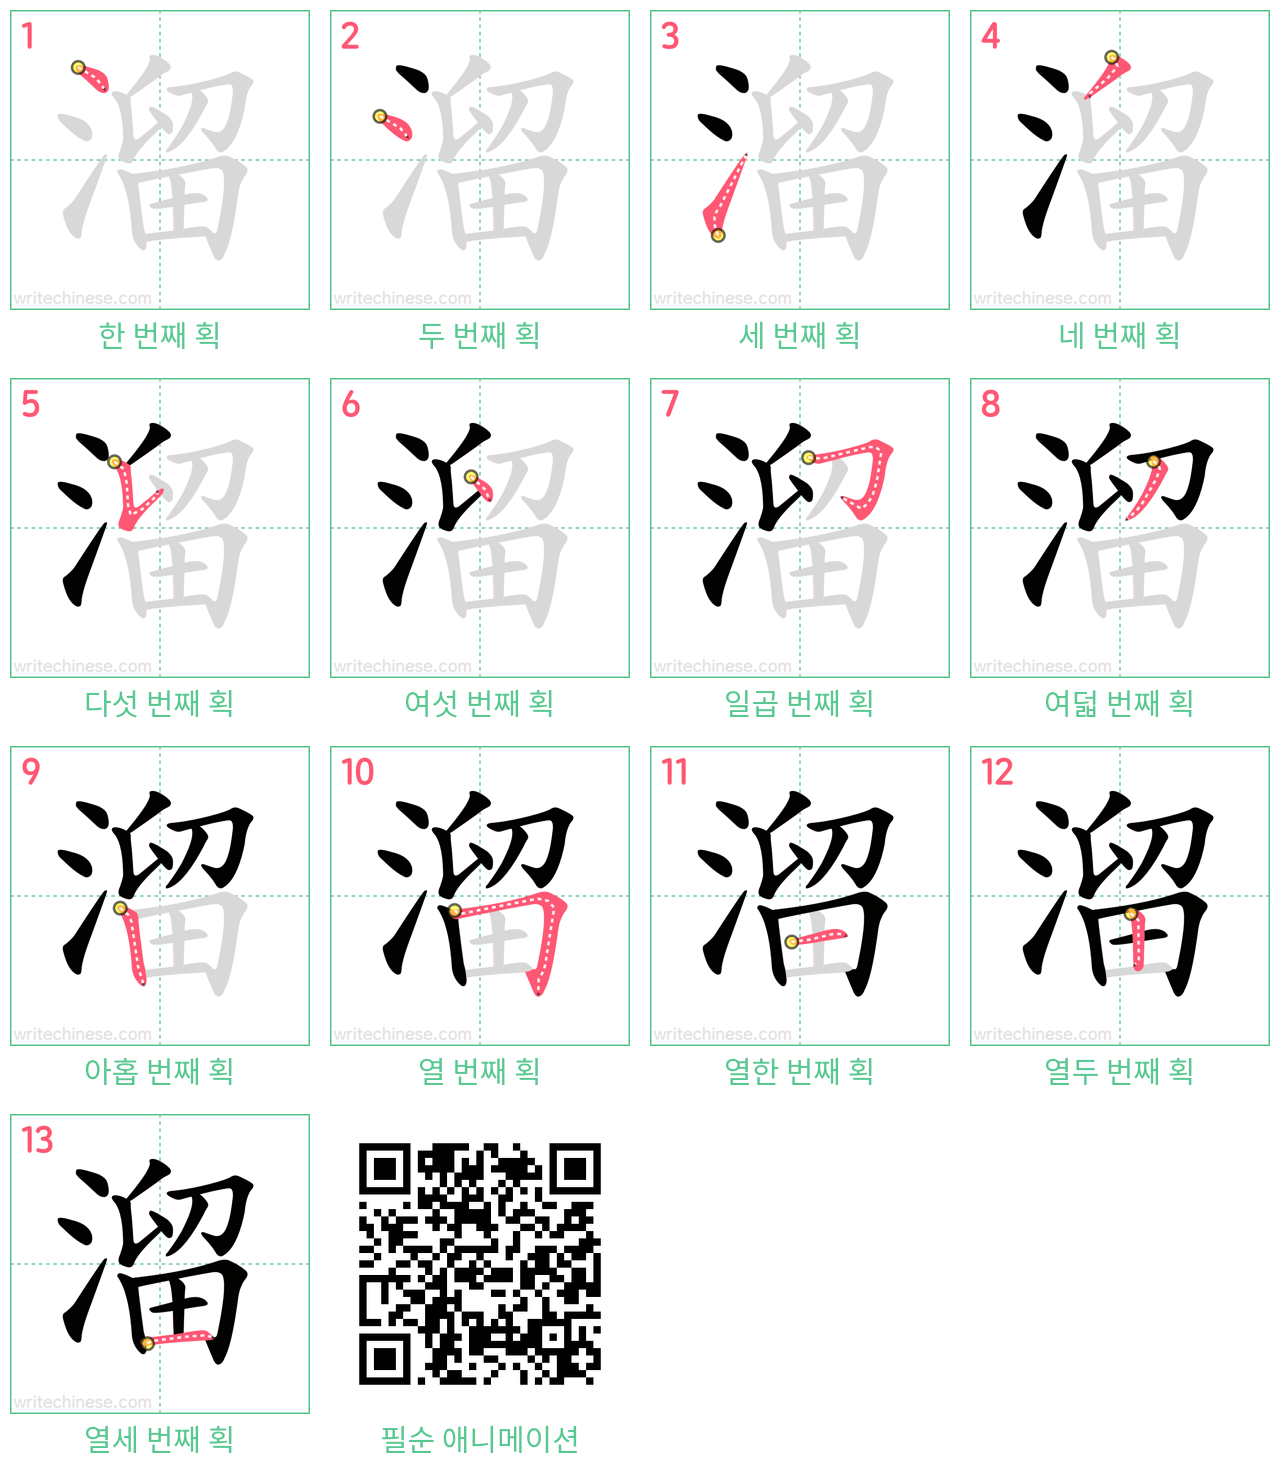 溜 step-by-step stroke order diagrams